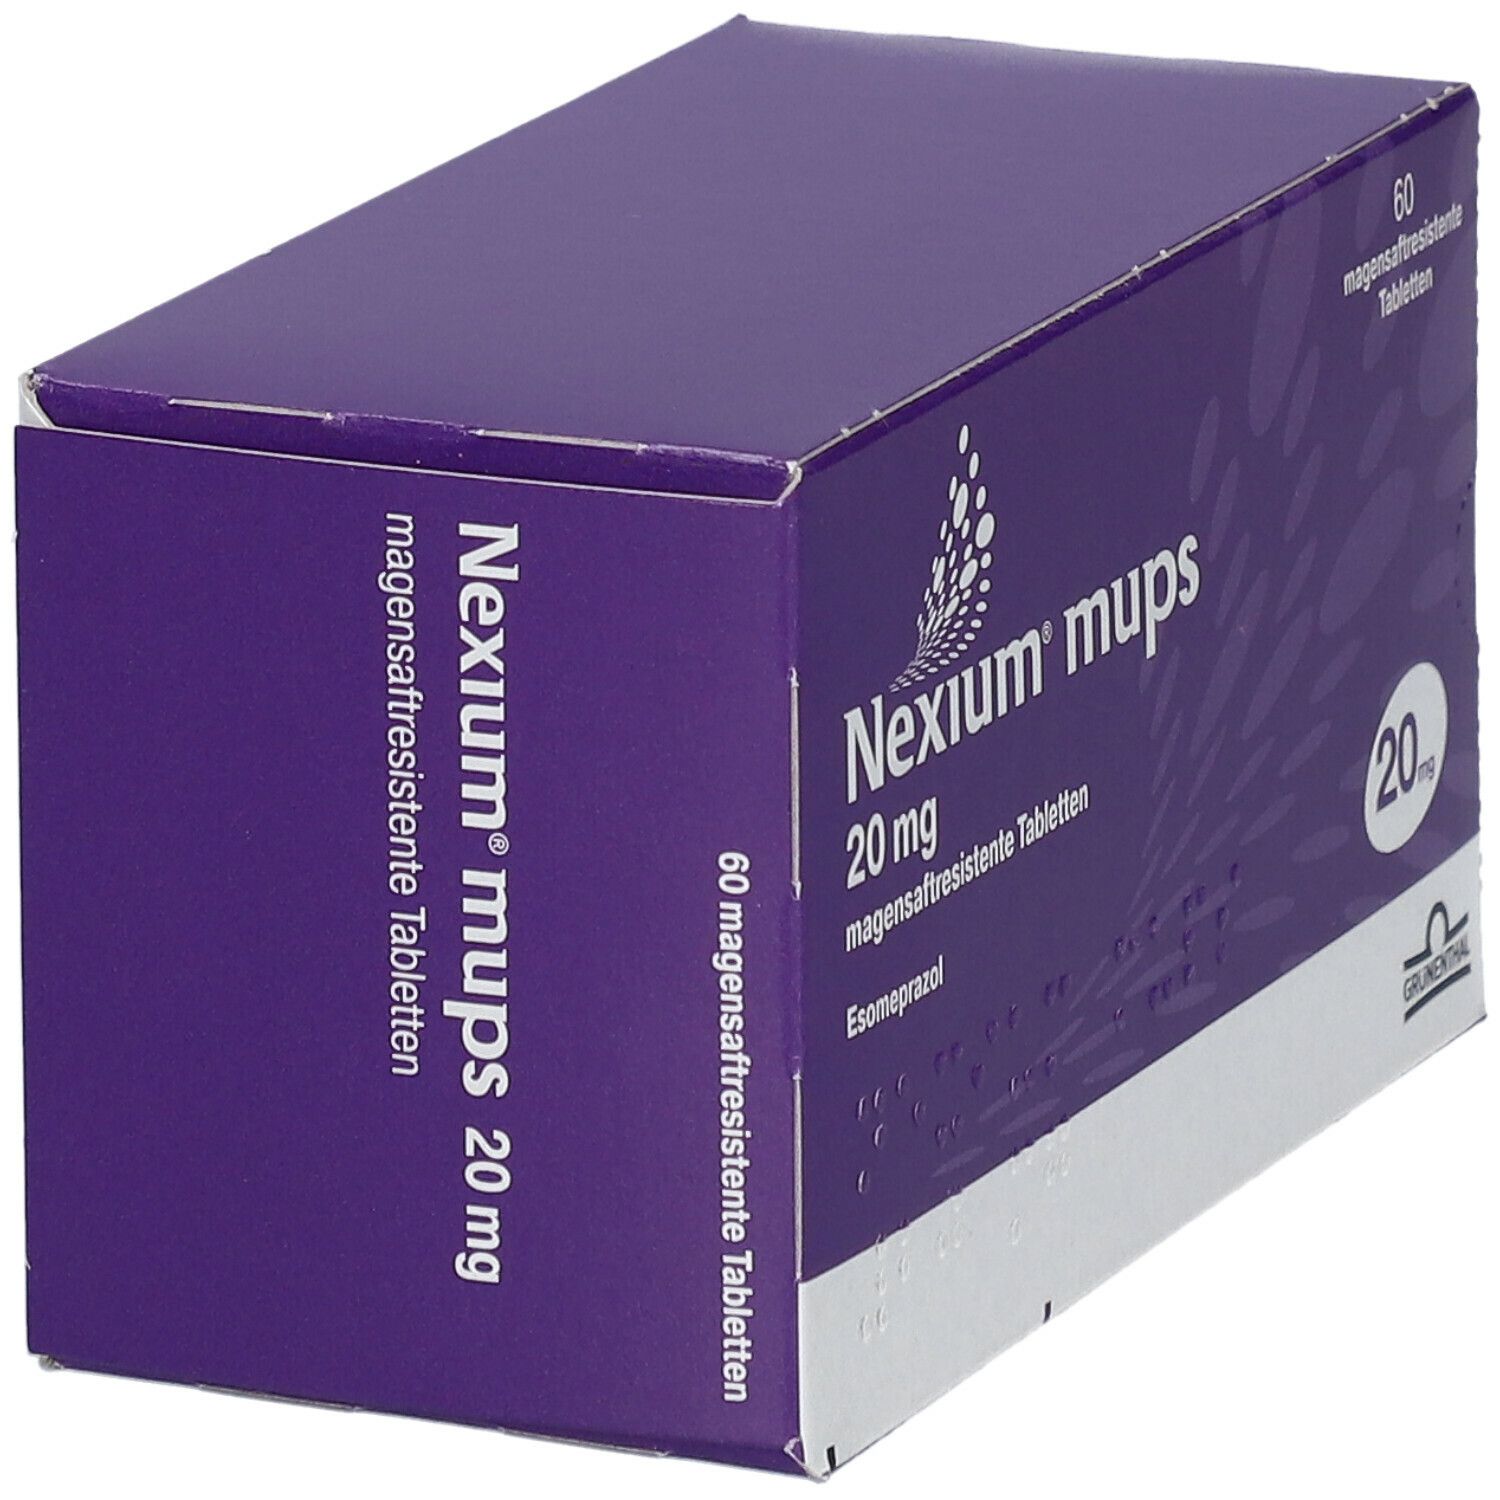 Nexium® mups 20 mg